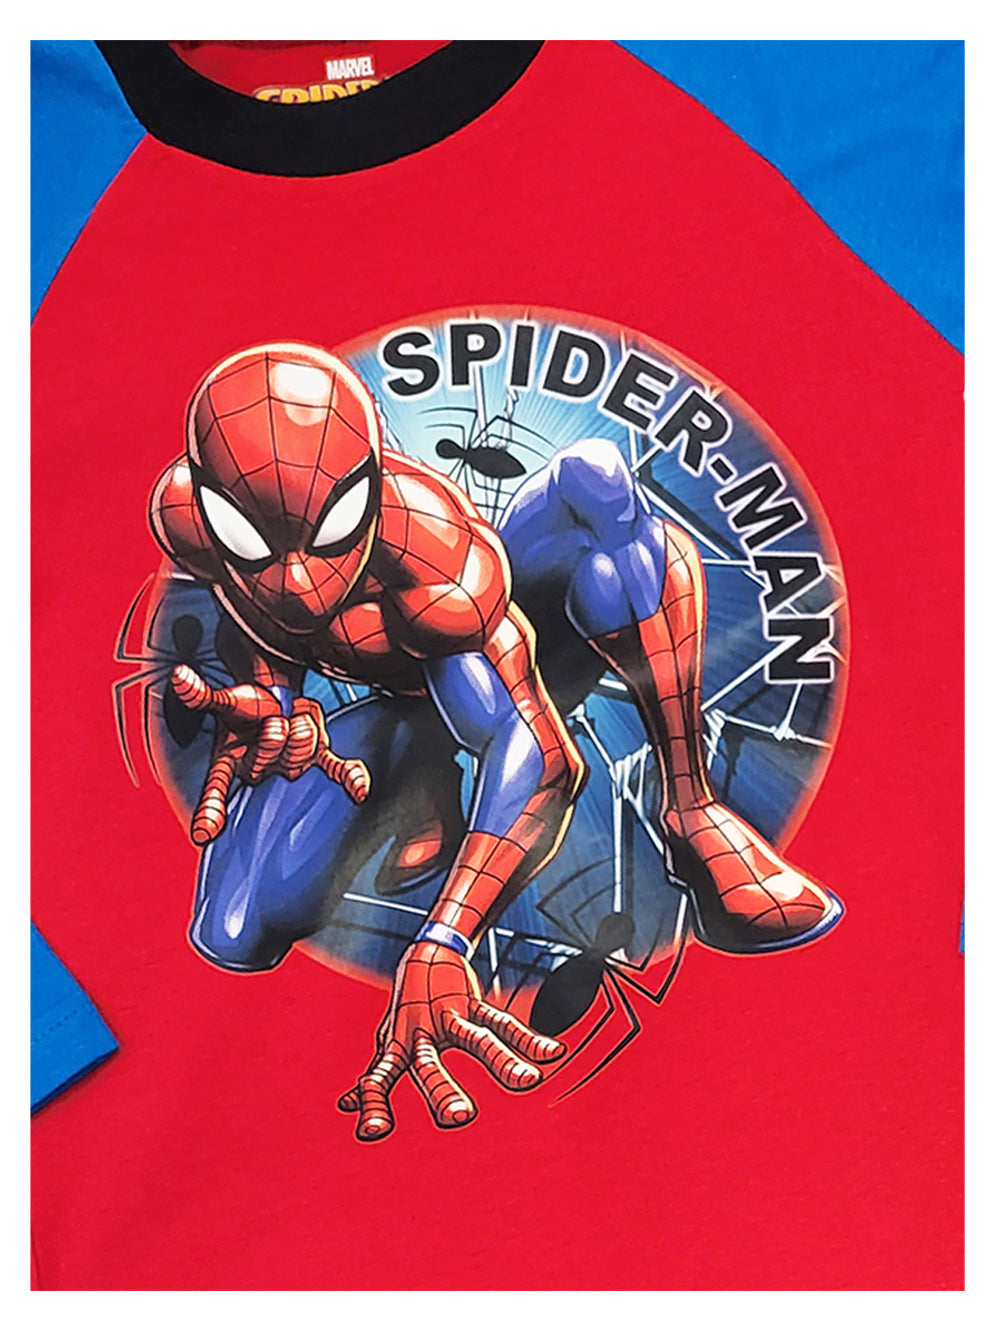 Boys Spiderman Marvel Pyjamas - Marvel